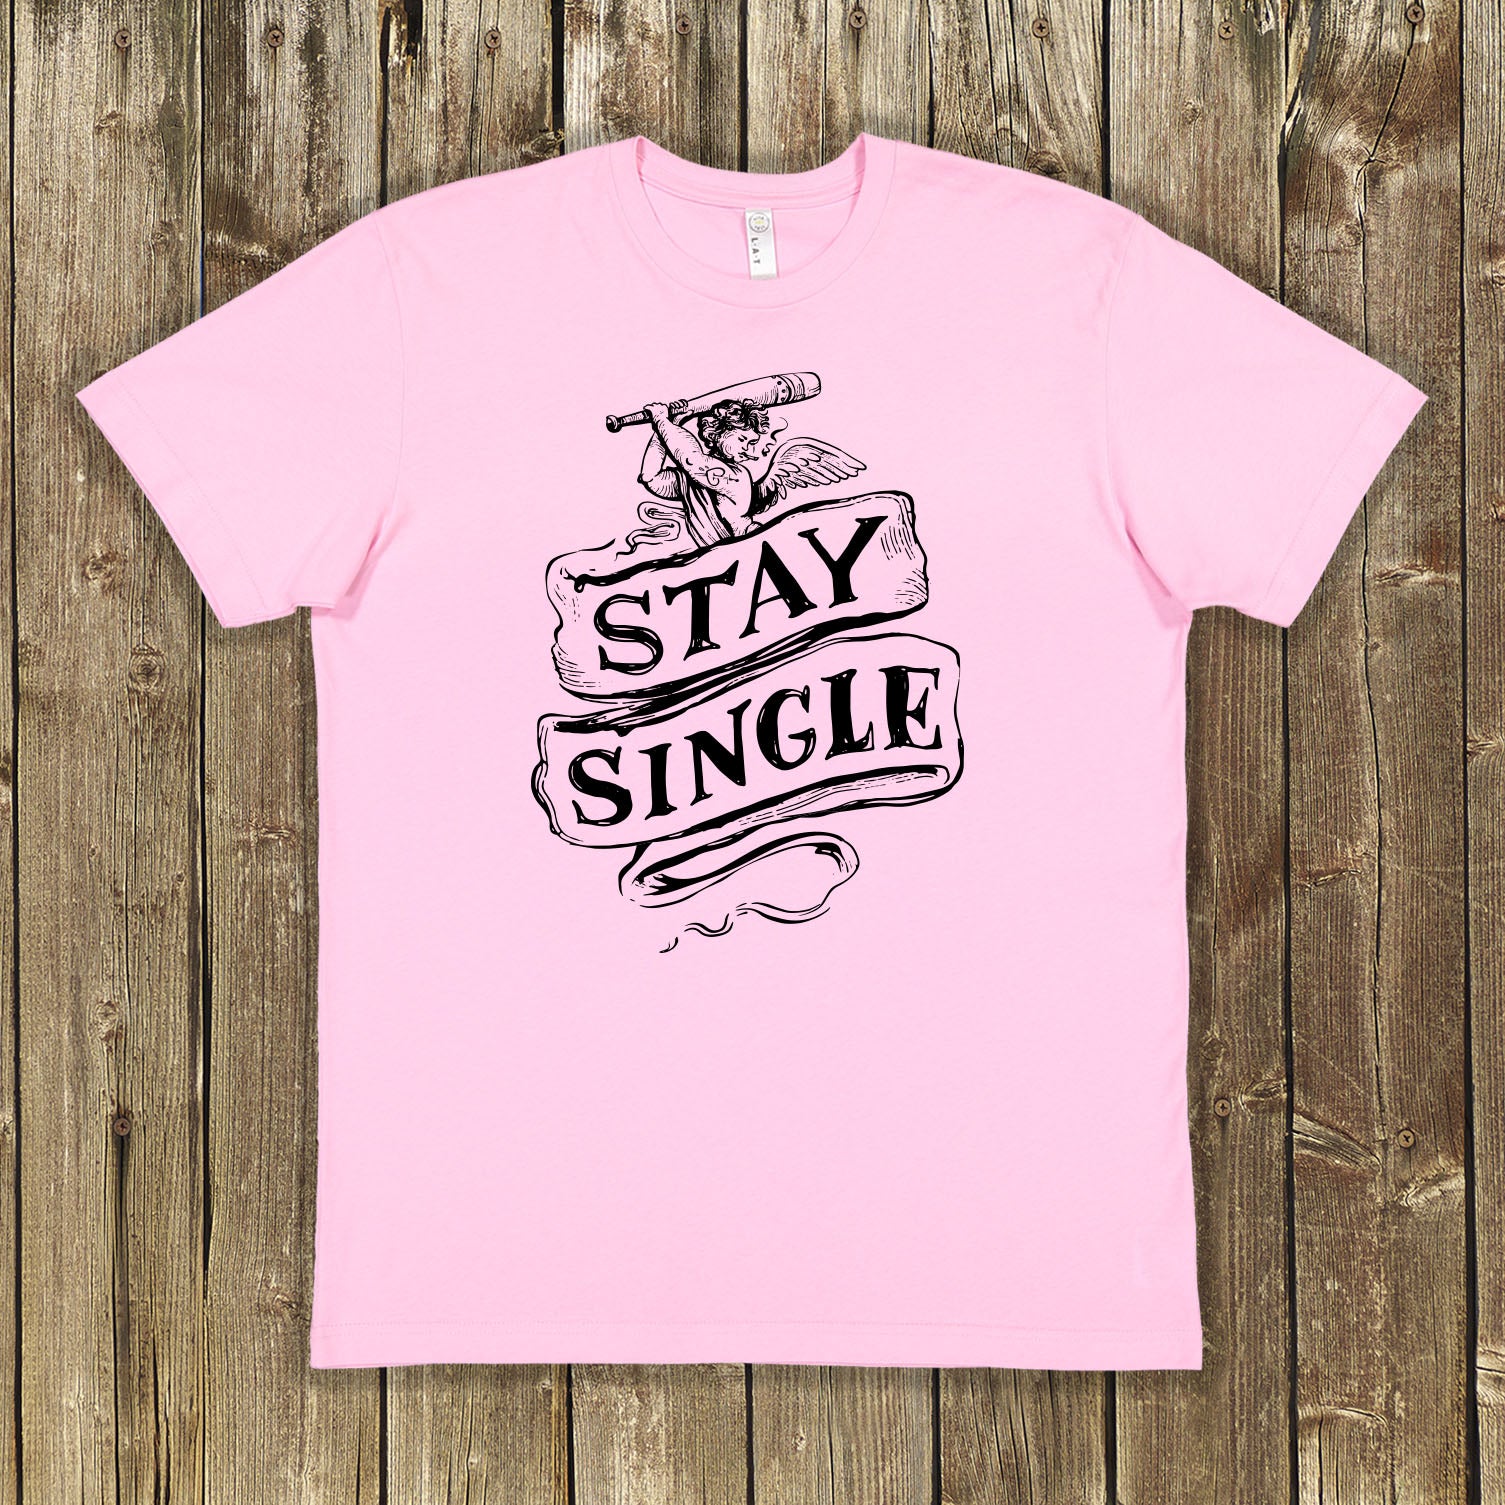 Stay Single Shirt